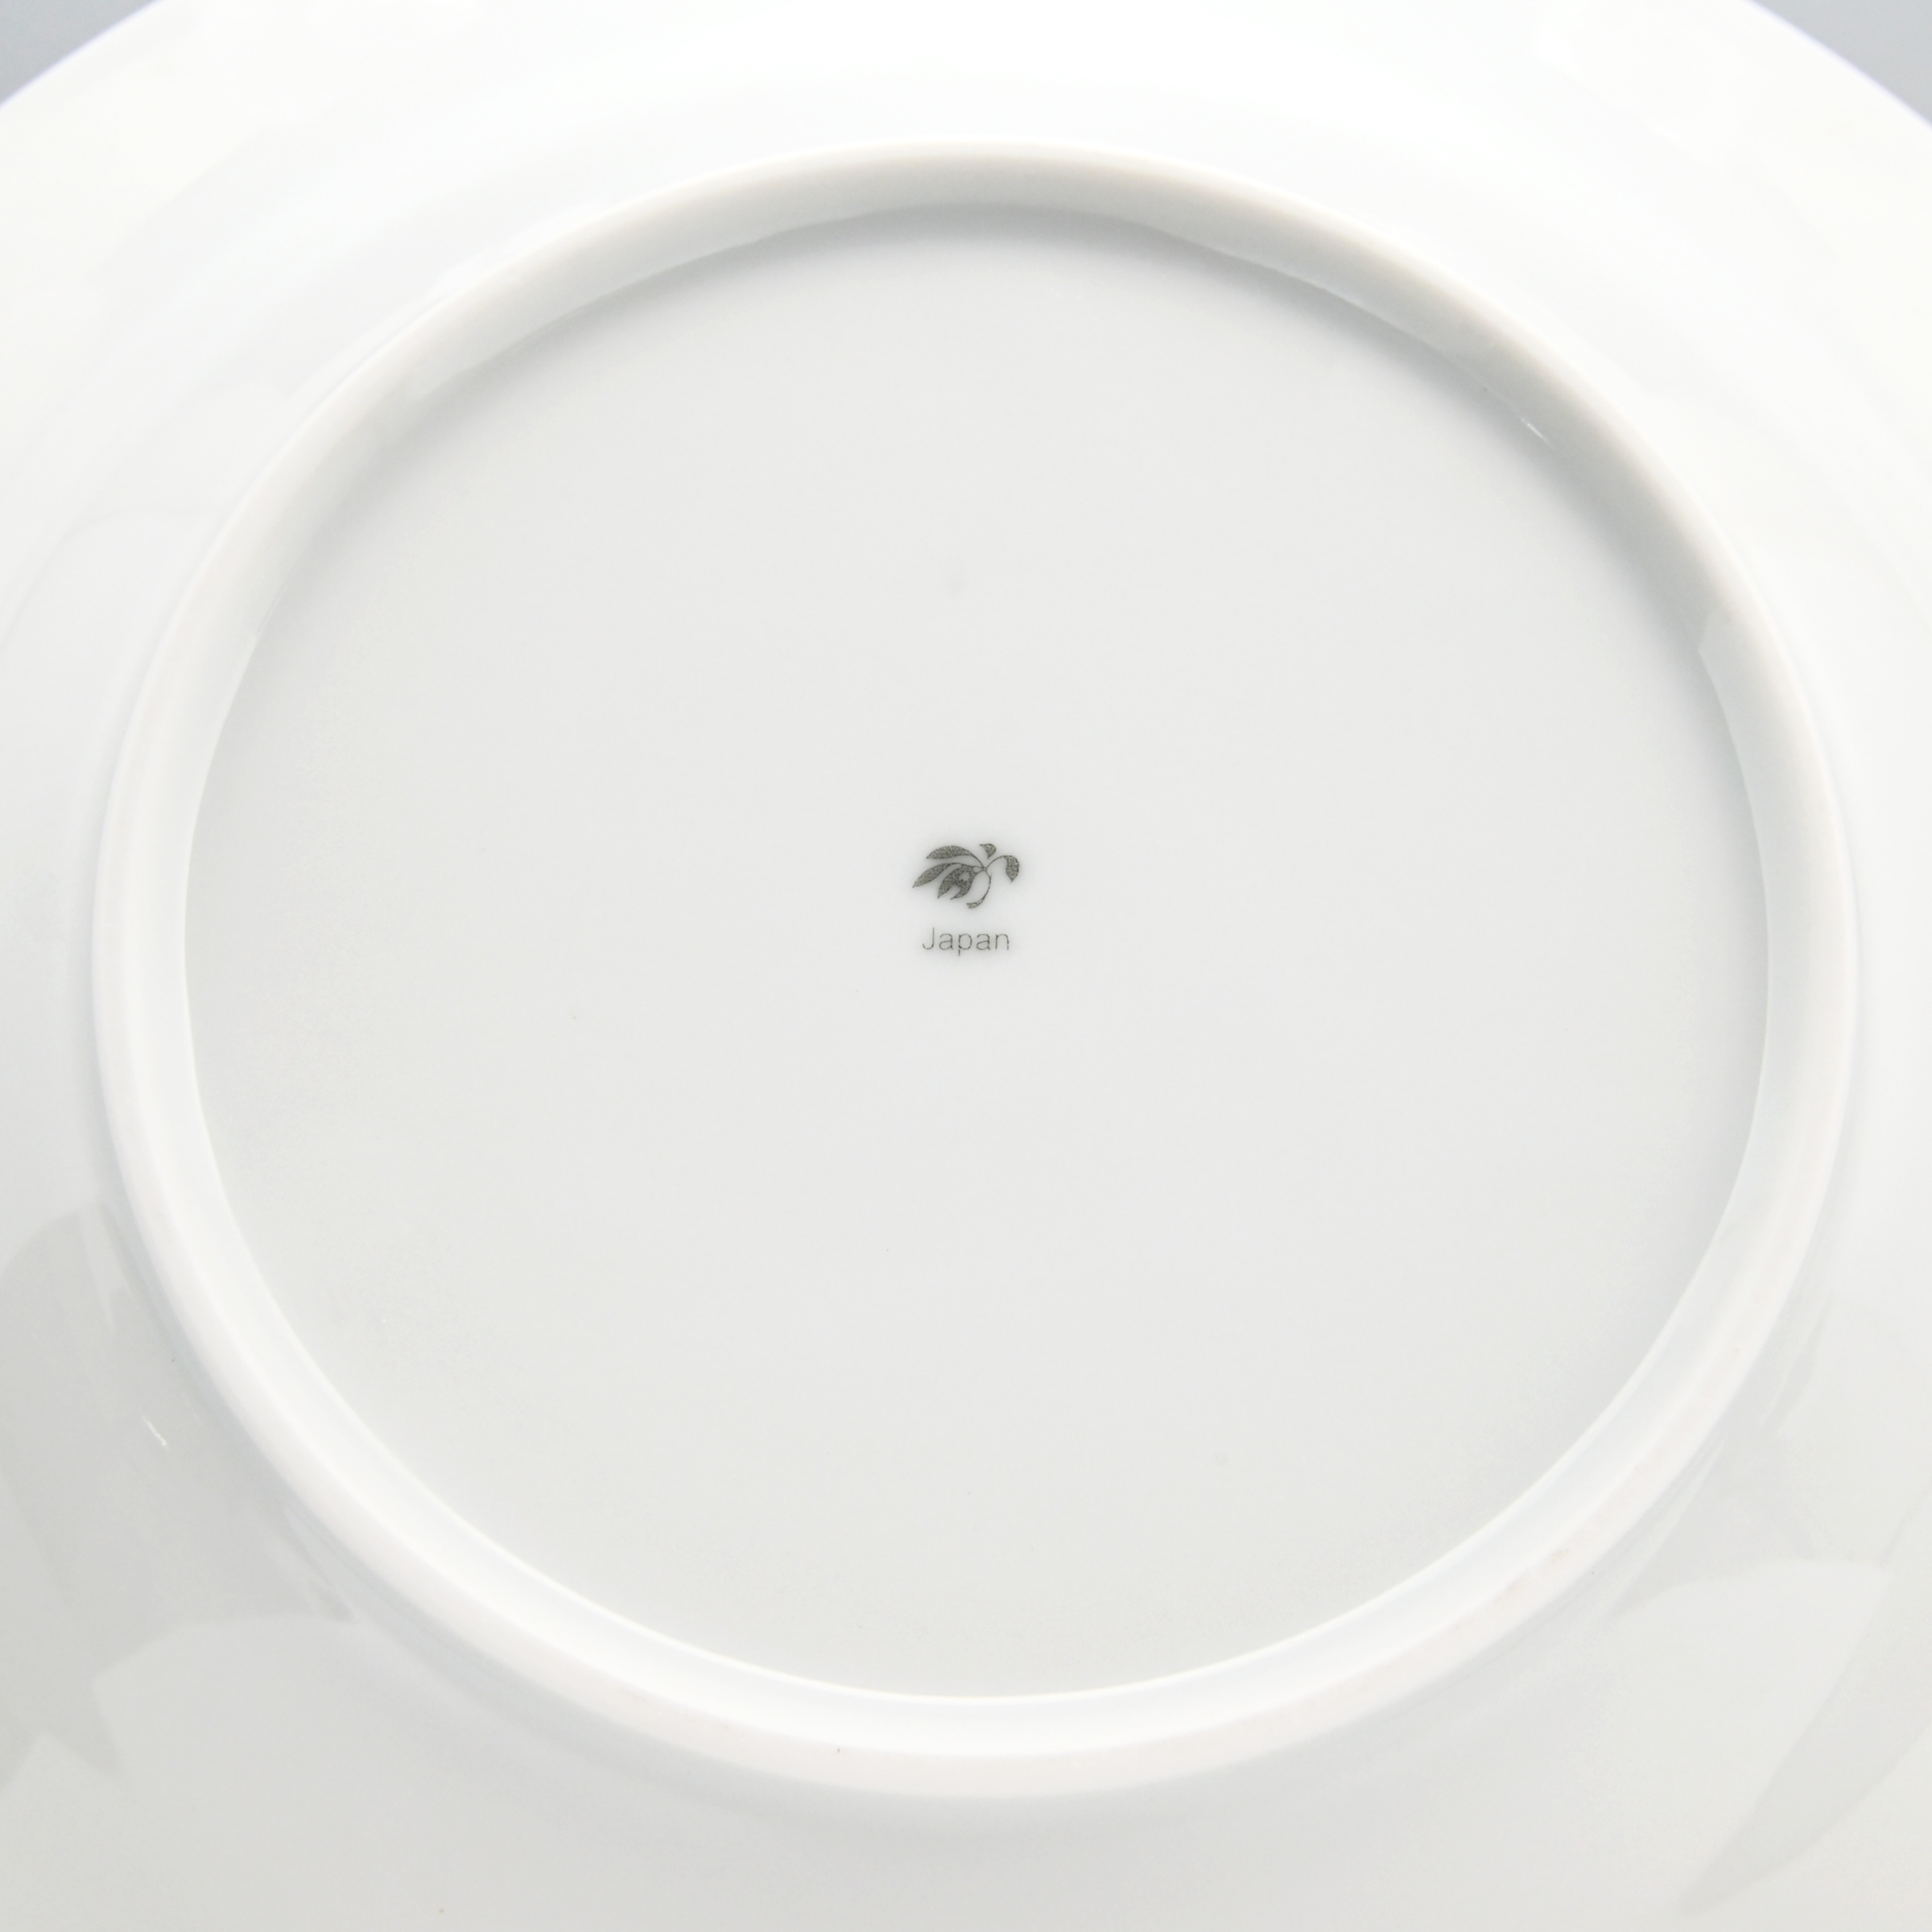 （ぶどう）ペアカレー皿（径24cm）*WEB陶器市限定商品*7